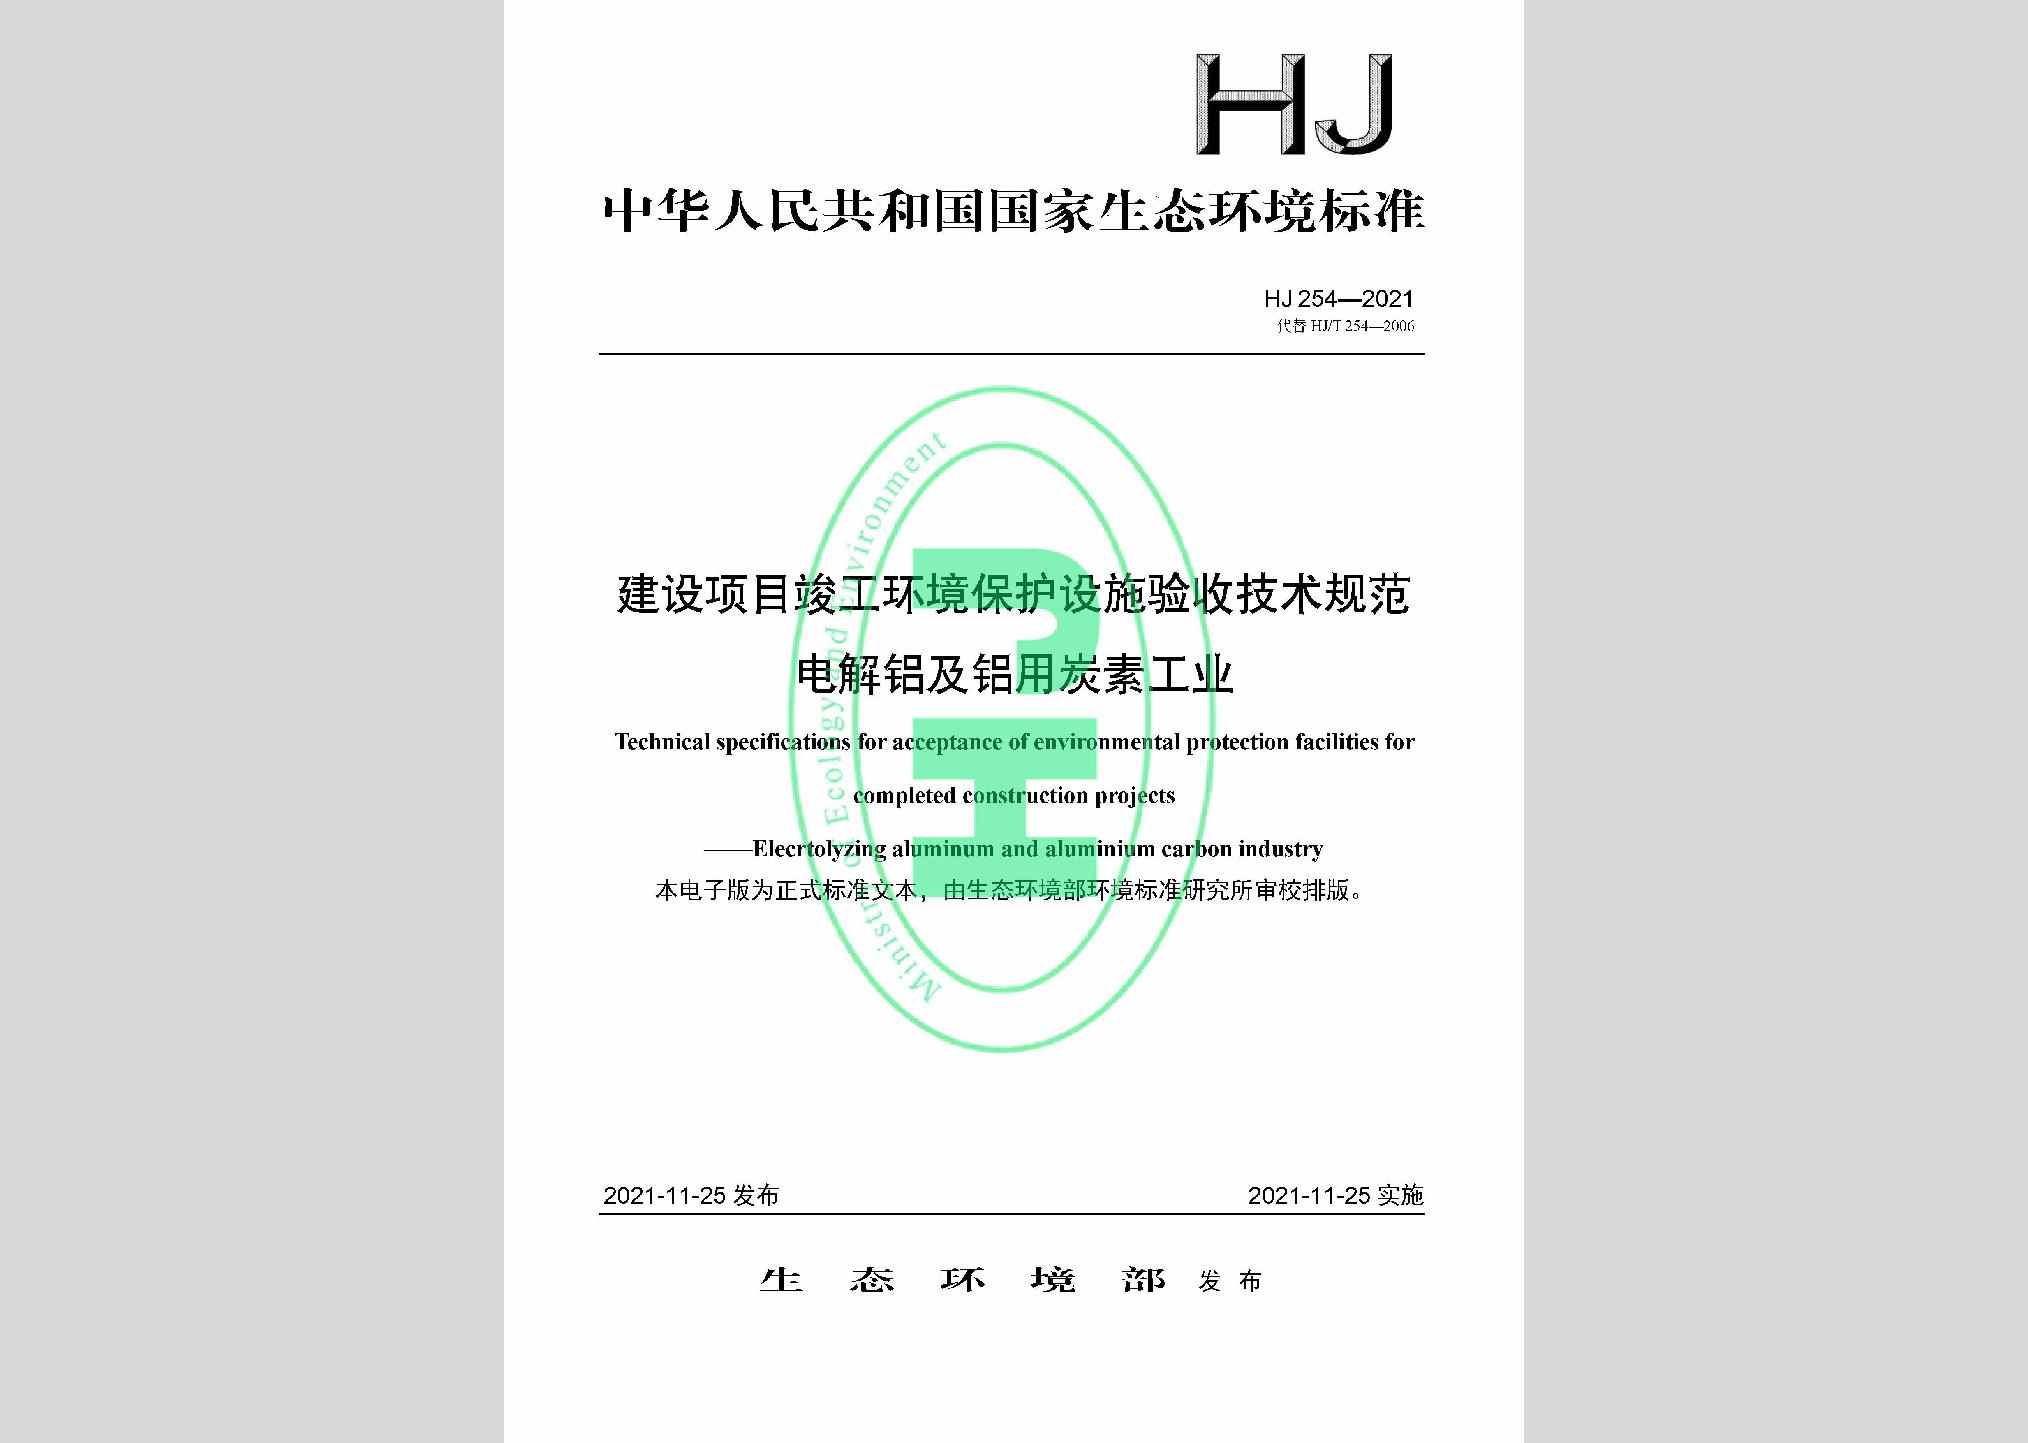 HJ254-2021：建设项目竣工环境保护设施验收技术规范电解铝及铝用炭素工业